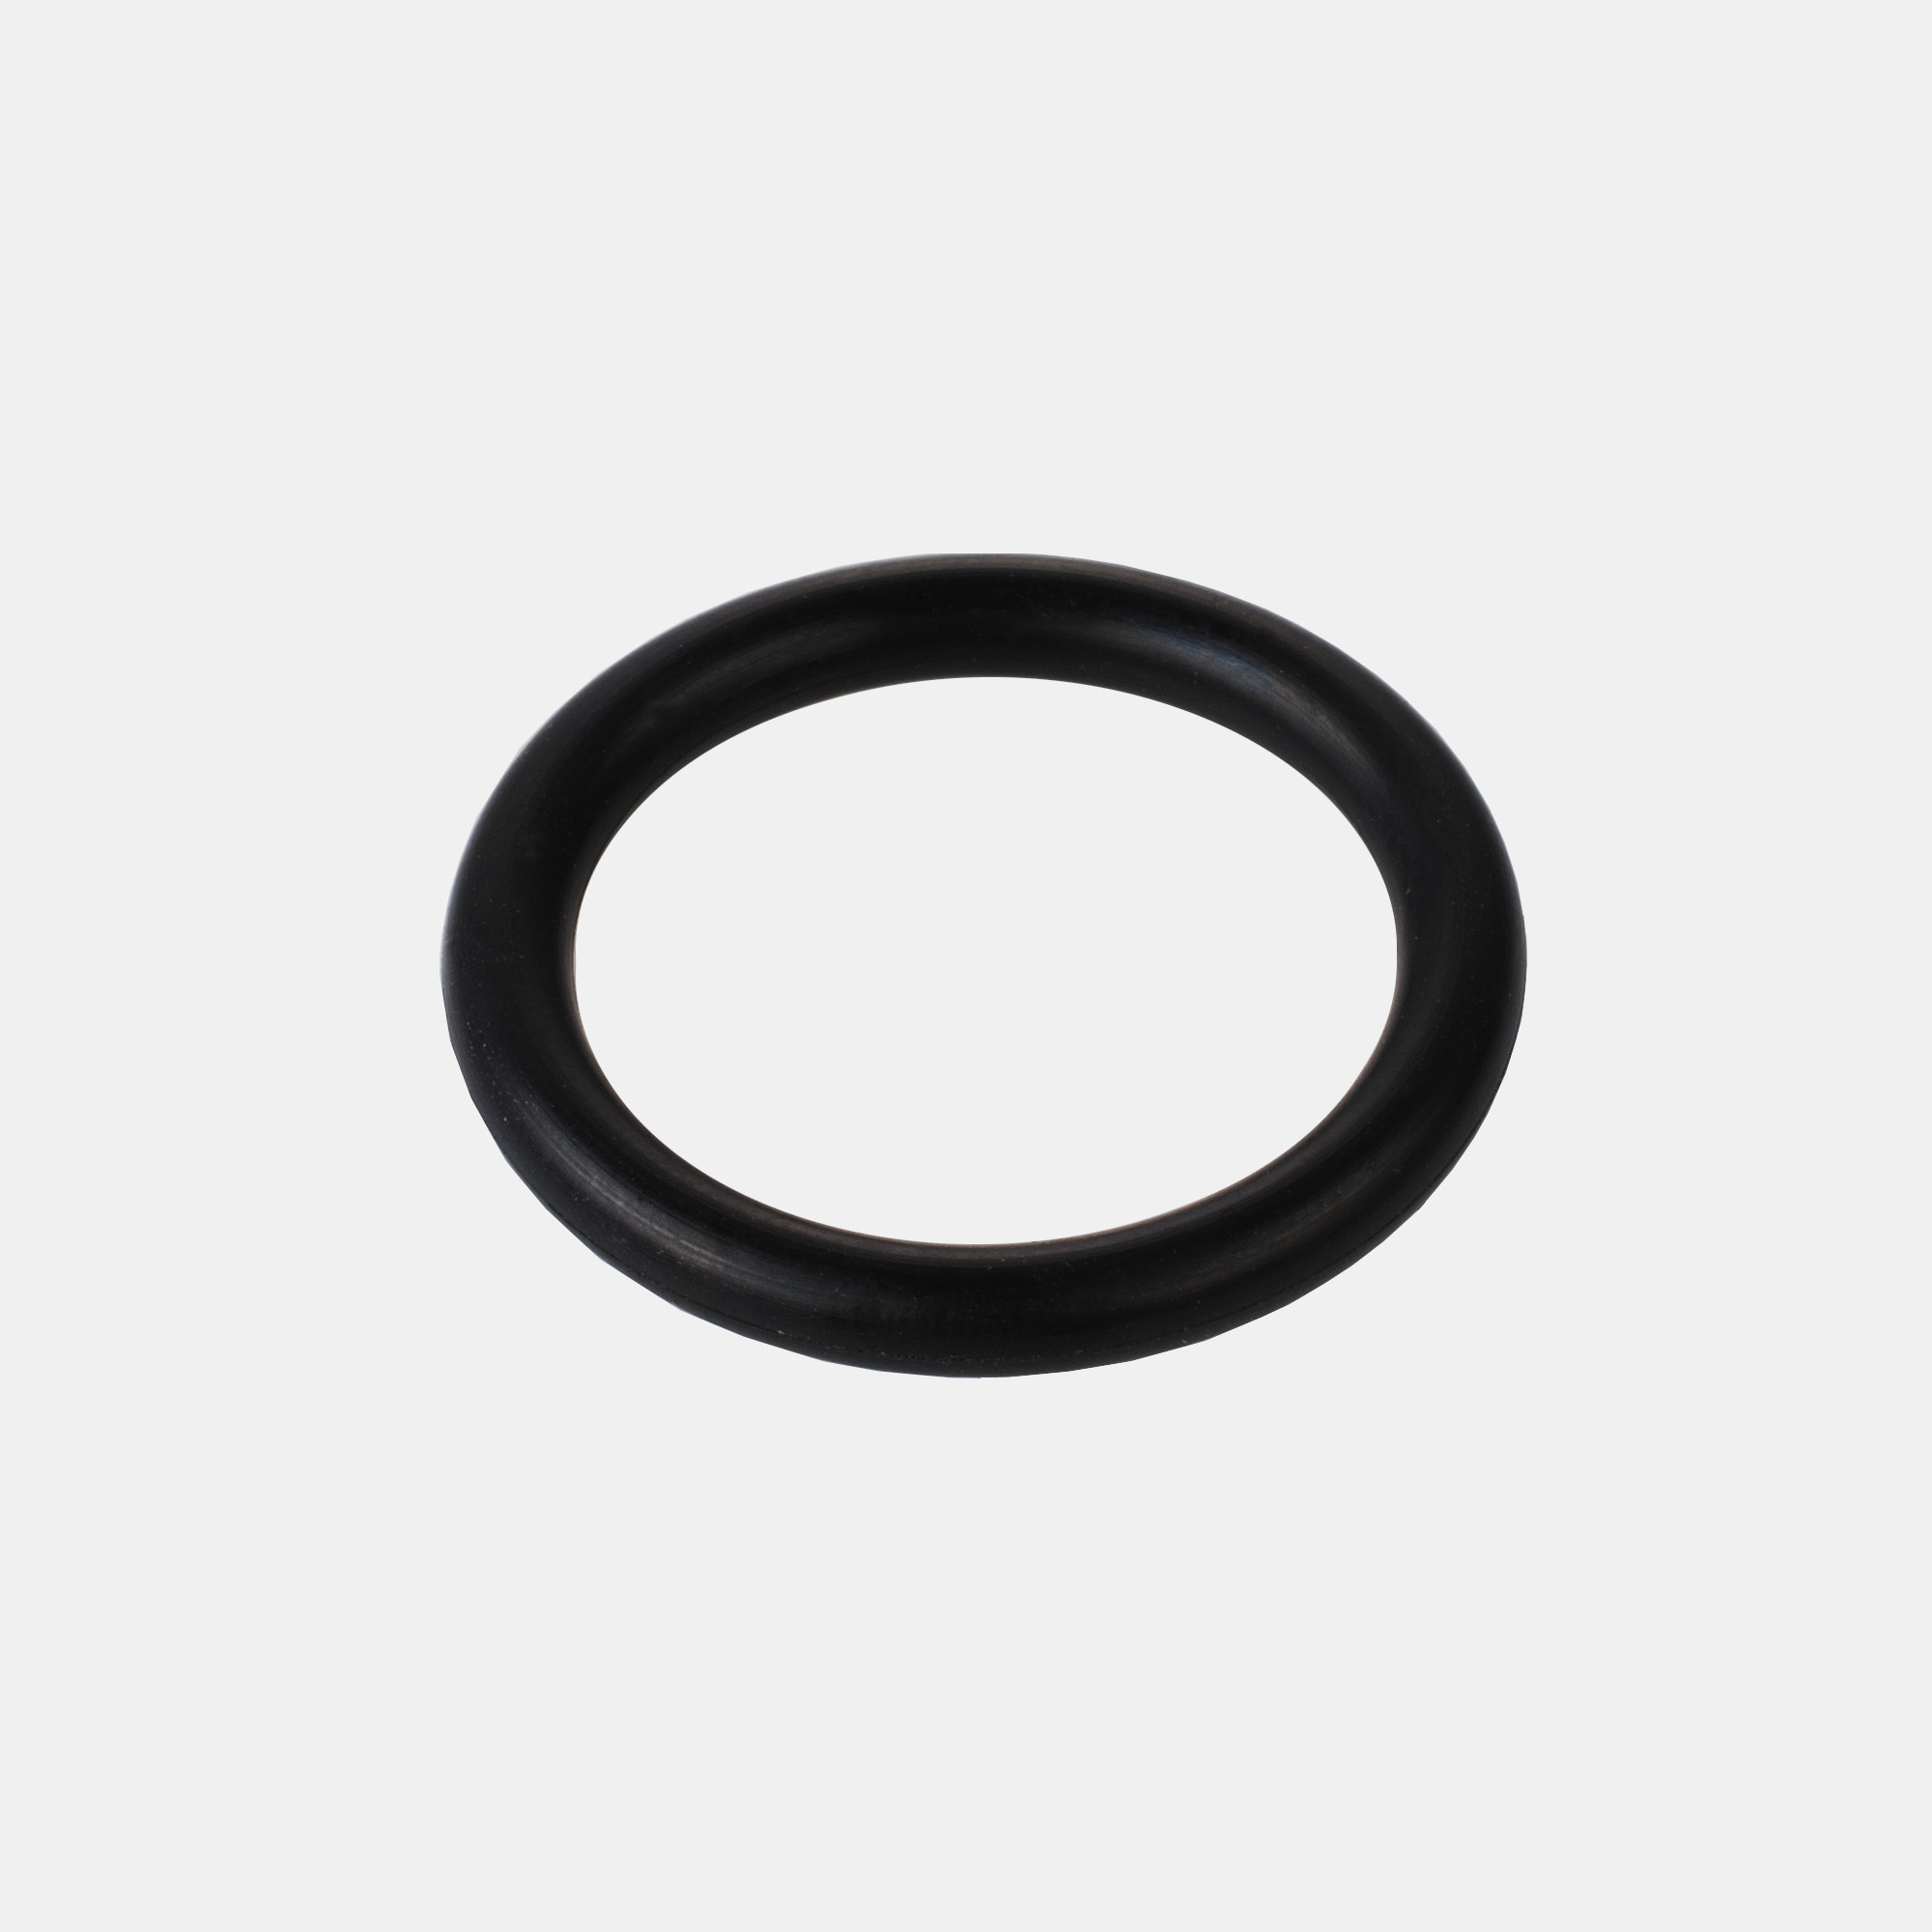 Уплотнительное кольцо для фильтра воды. Уплотнительное кольцо штуцера m113407010. Уплотнительное кольцо для фитинга шланга мойки Daewoo DAW 450. Уплотнительное кольцо Simonelli Appia 2. Nuova Simonelli Appia уплотнительное кольцо.